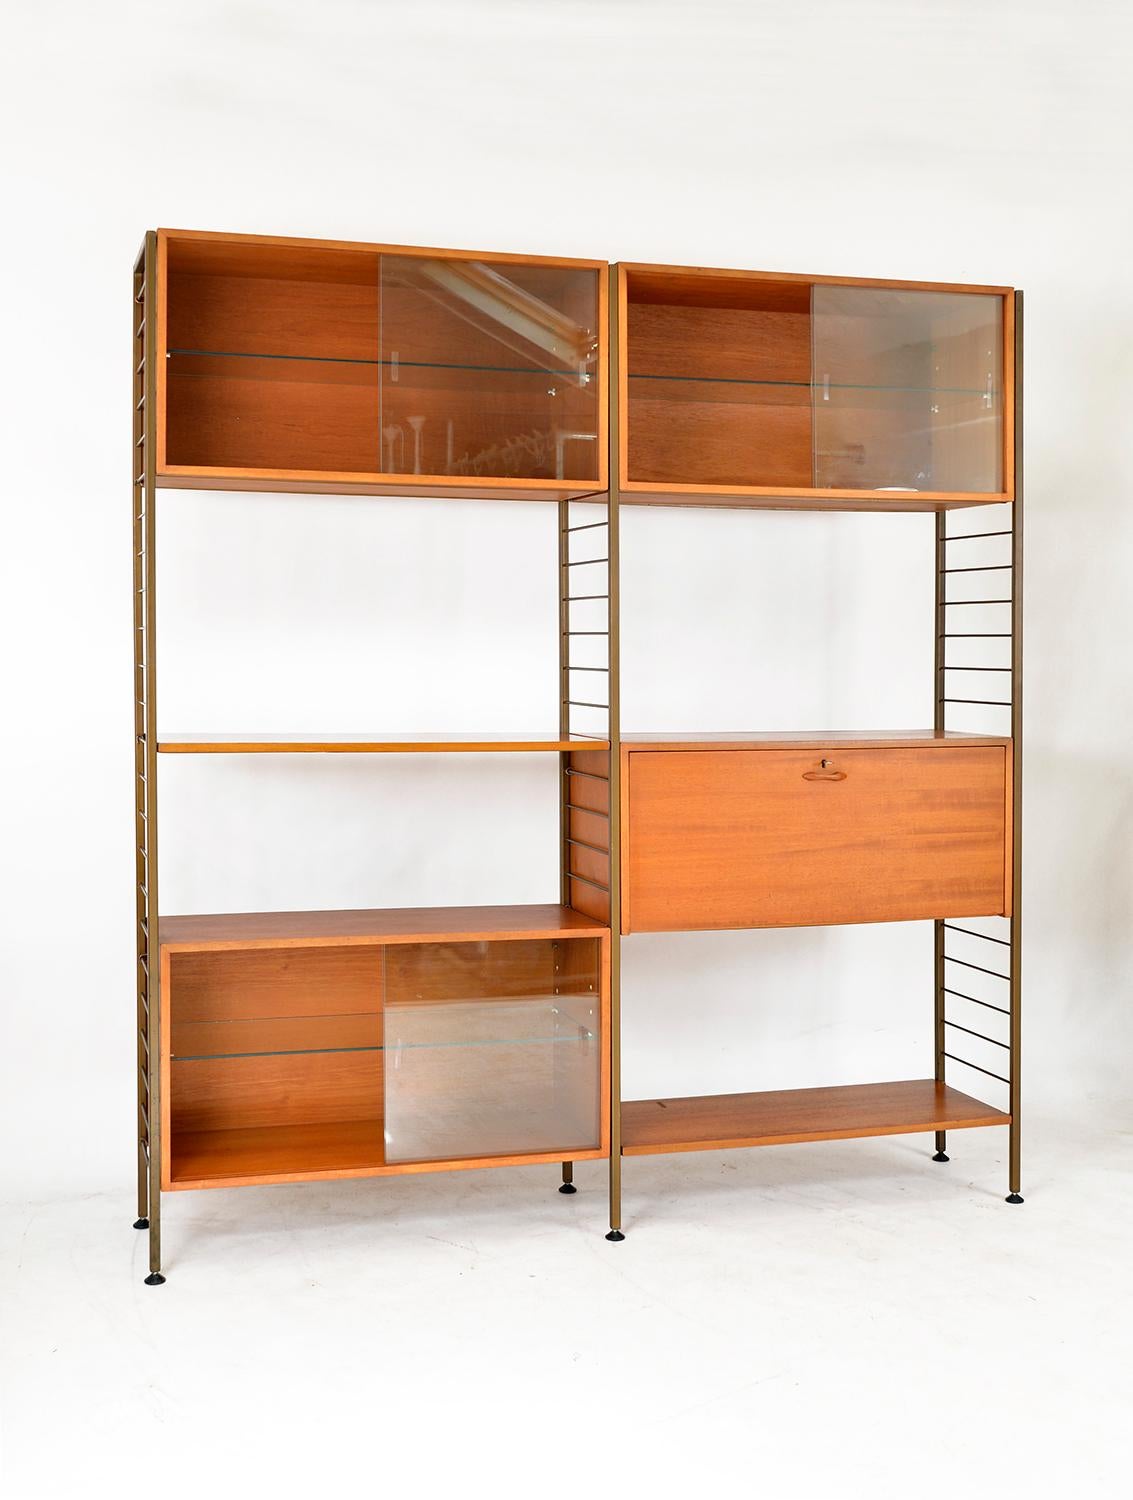 British 60s Staples Ladderax Freestanding Modular Teak Shelving System Room Divider Desk